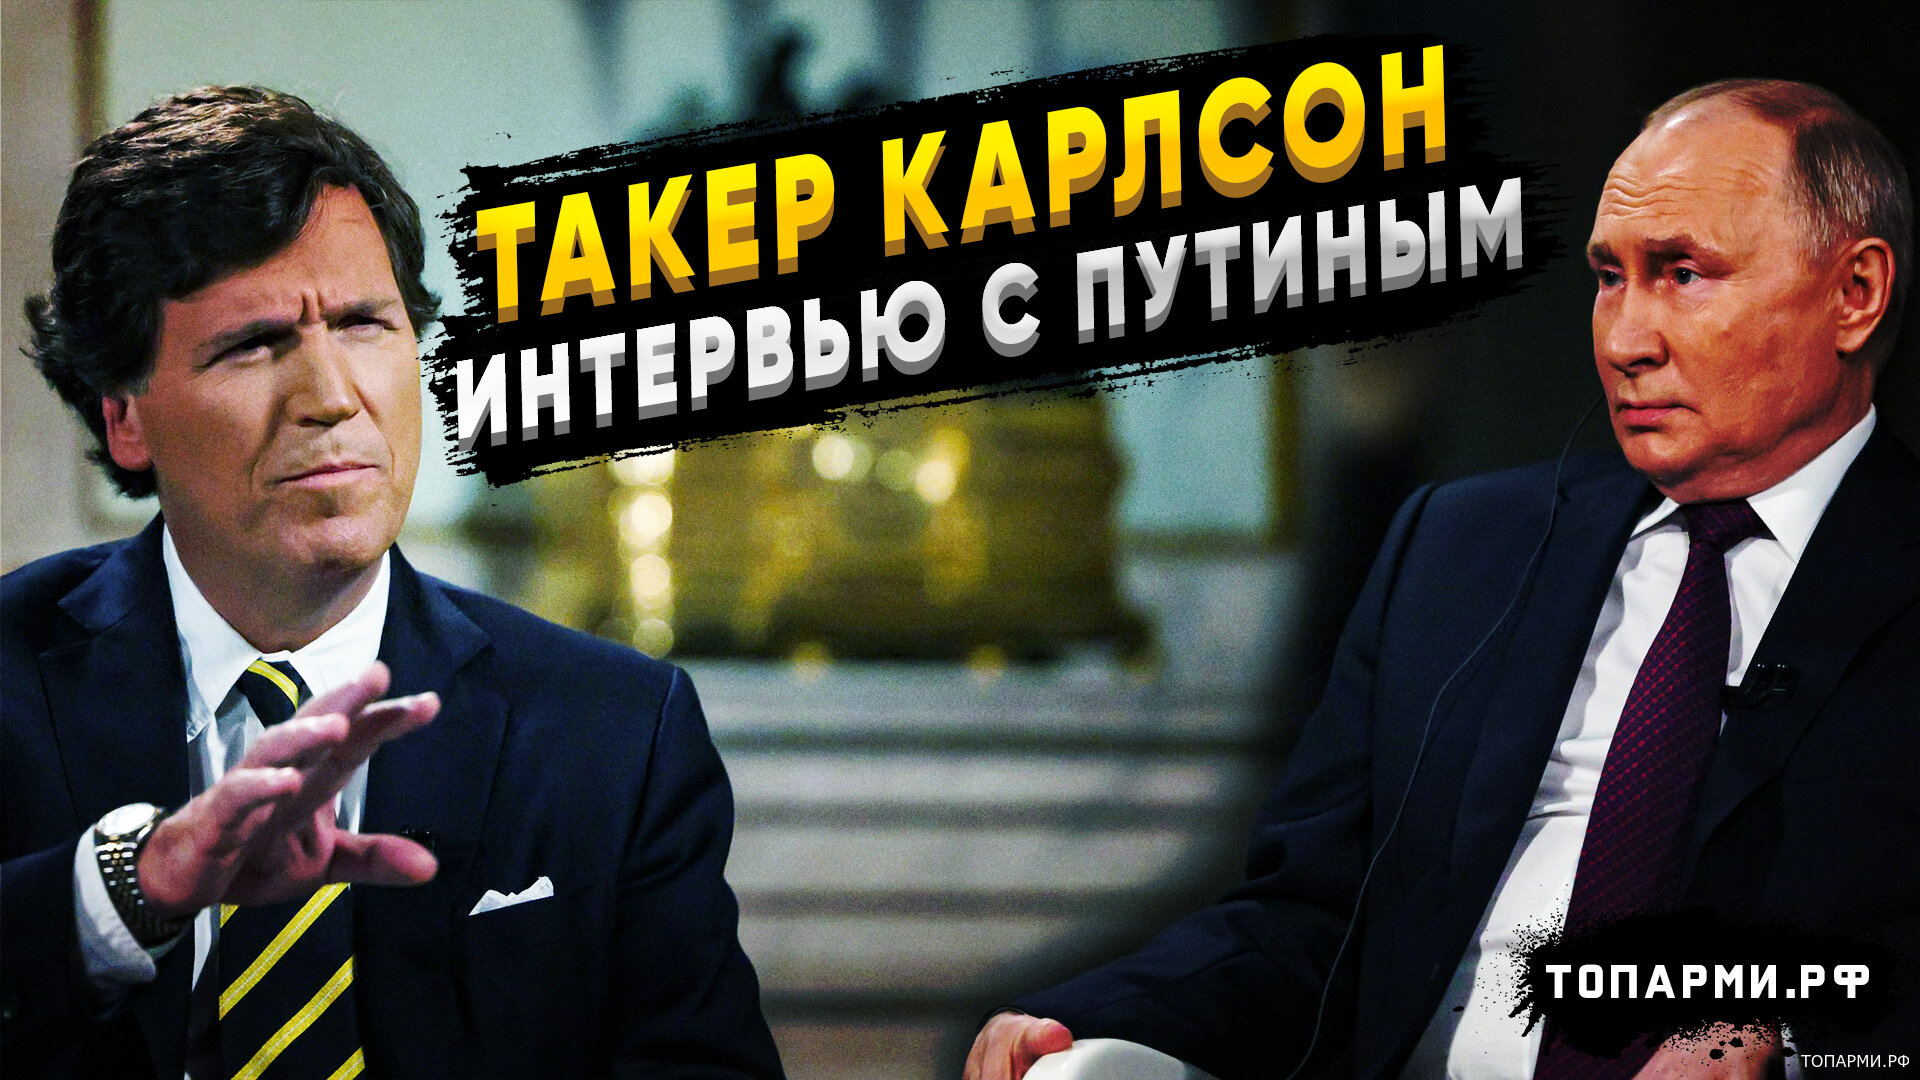 Западные СМИ о интервью с Путиным от Такера Карлсона